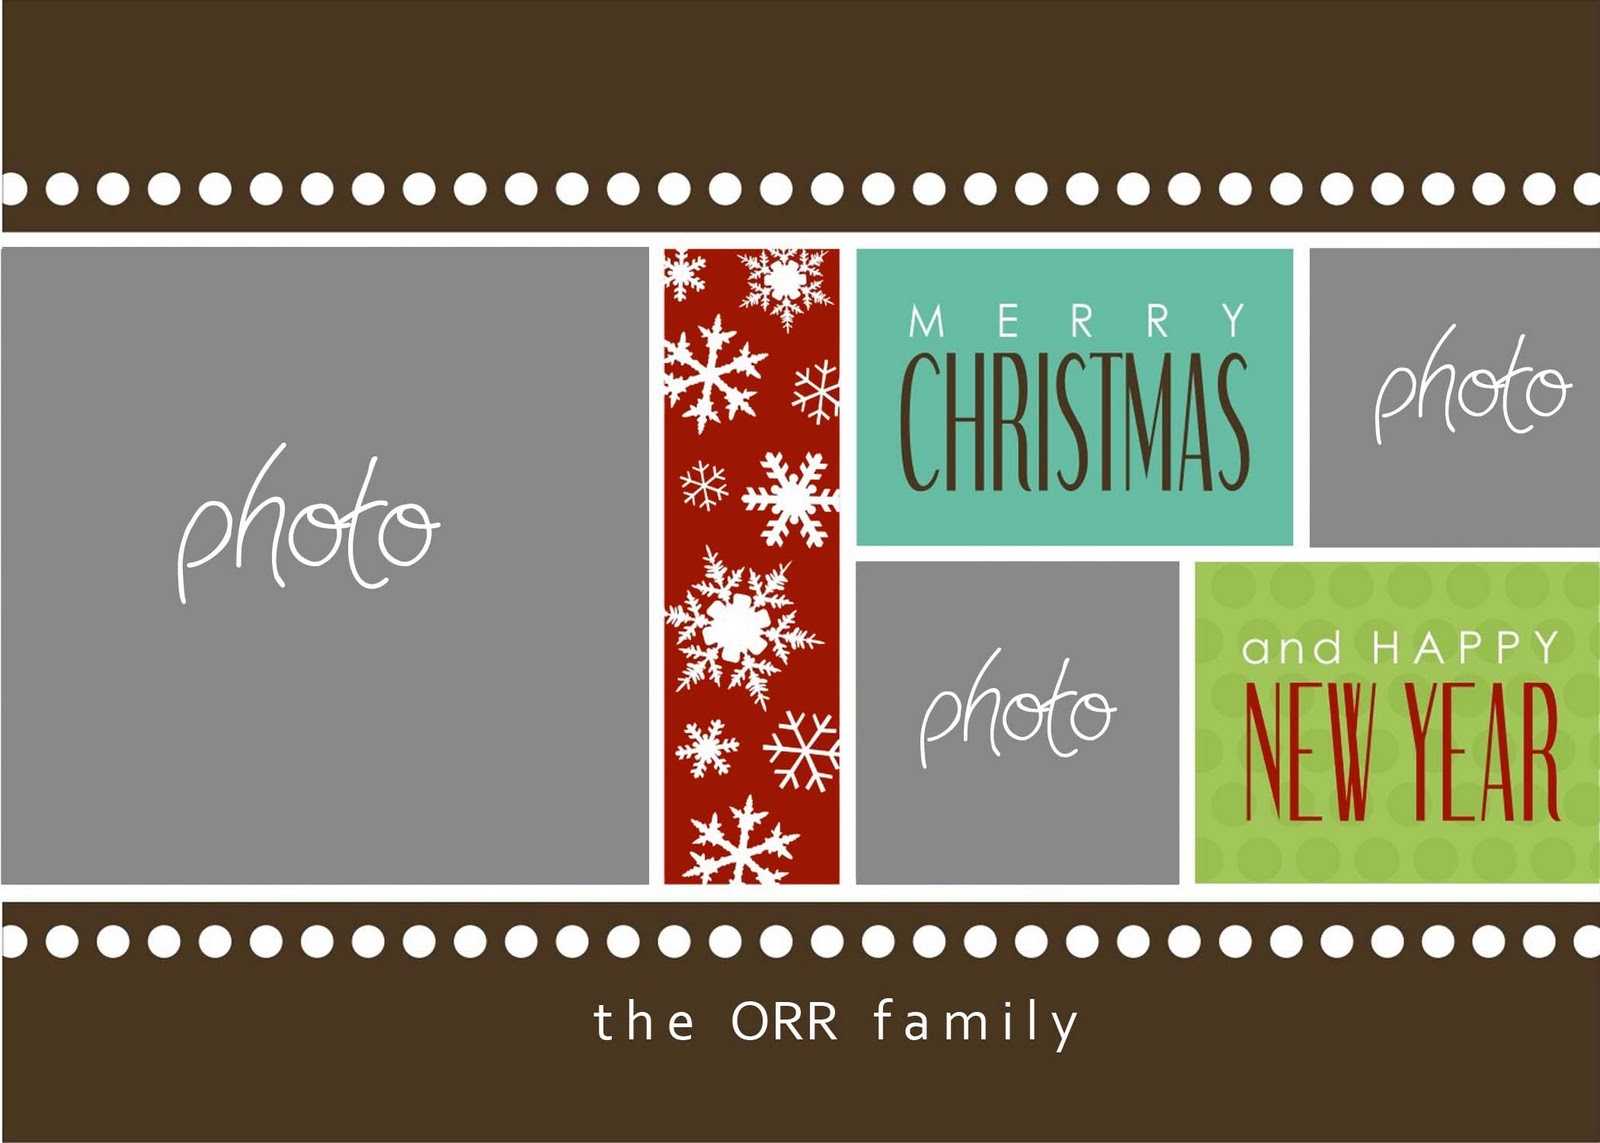 Christmas Cards Templates Photoshop ] - Christmas Card Intended For Christmas Photo Card Templates Photoshop